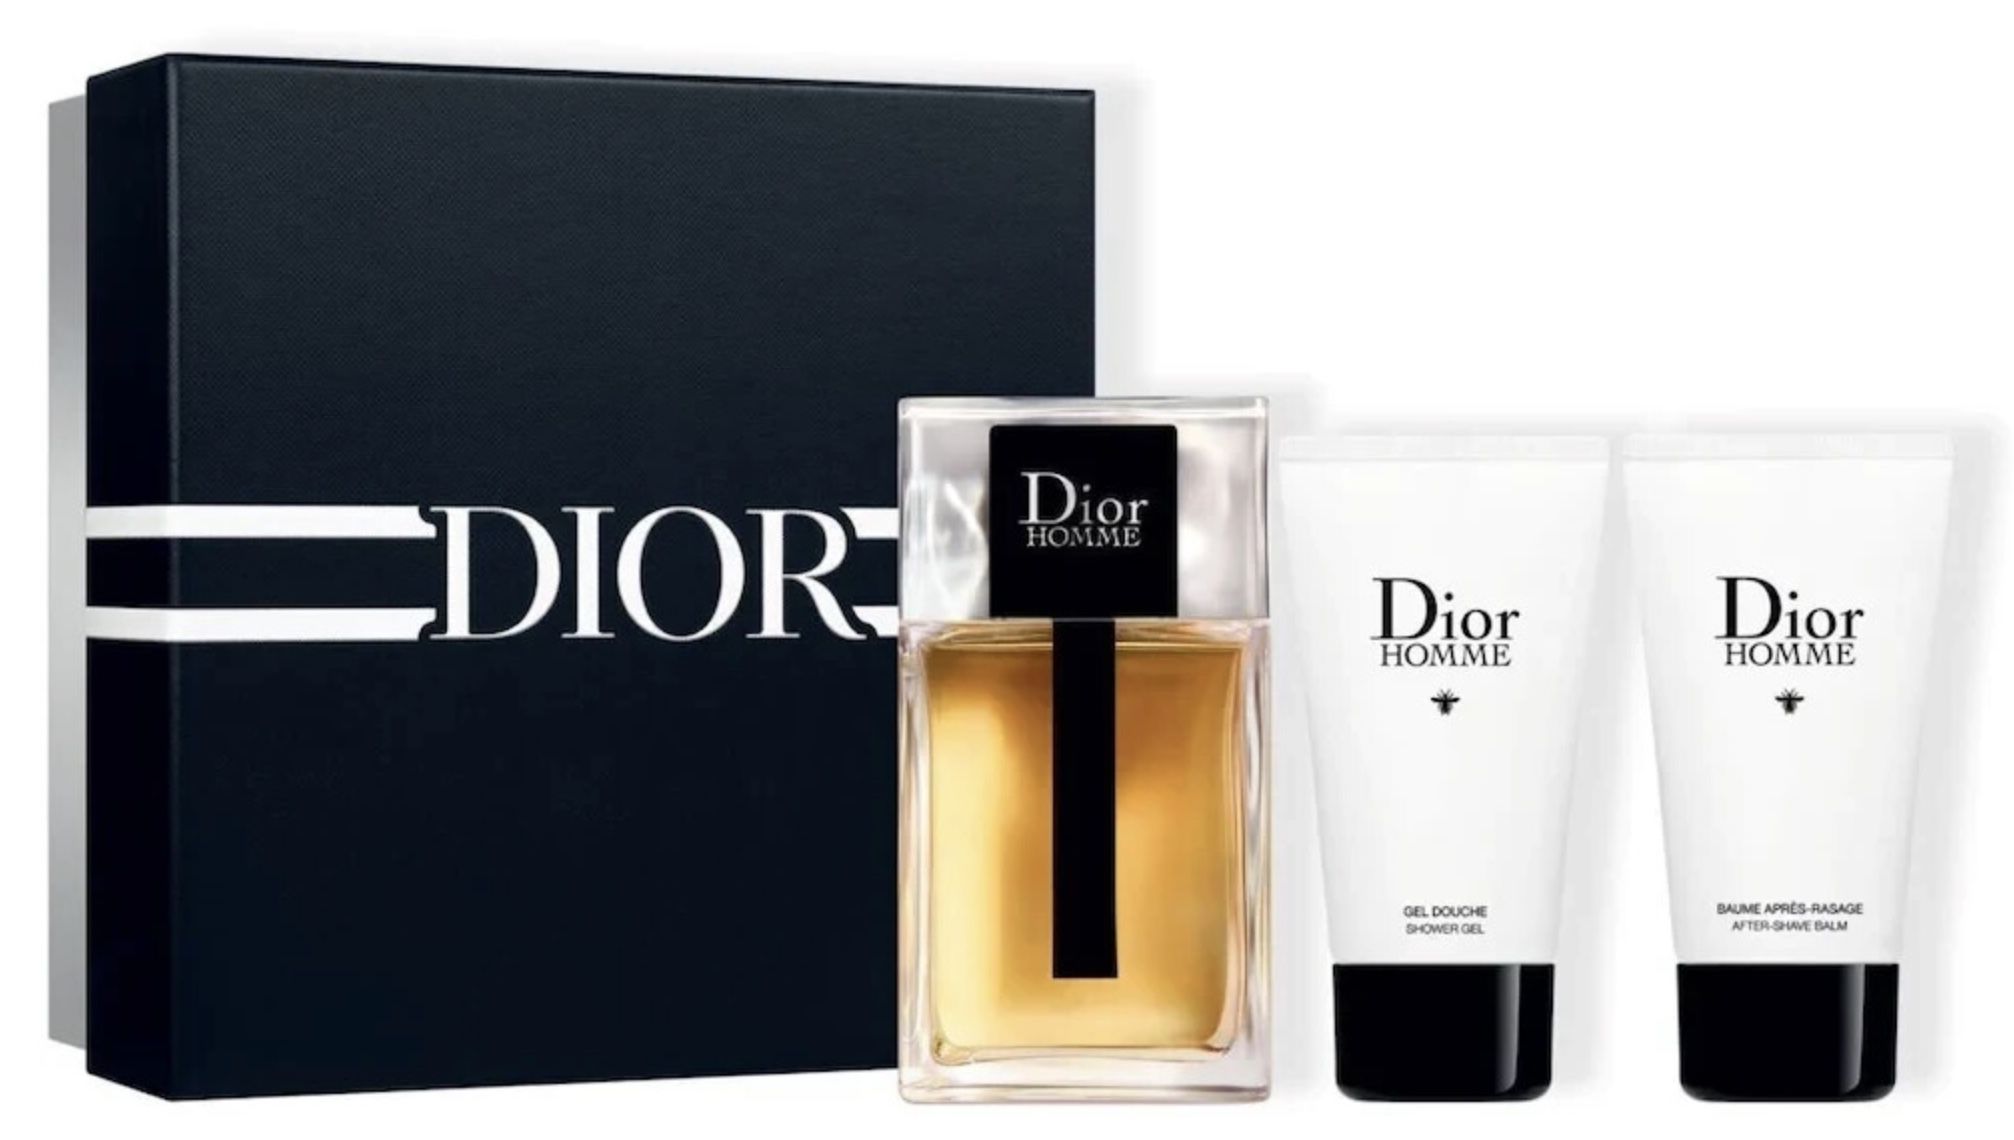 Dior Homme Duftset (100ml EdT + After Shave + Duschgel) für 62€ (statt 101€)